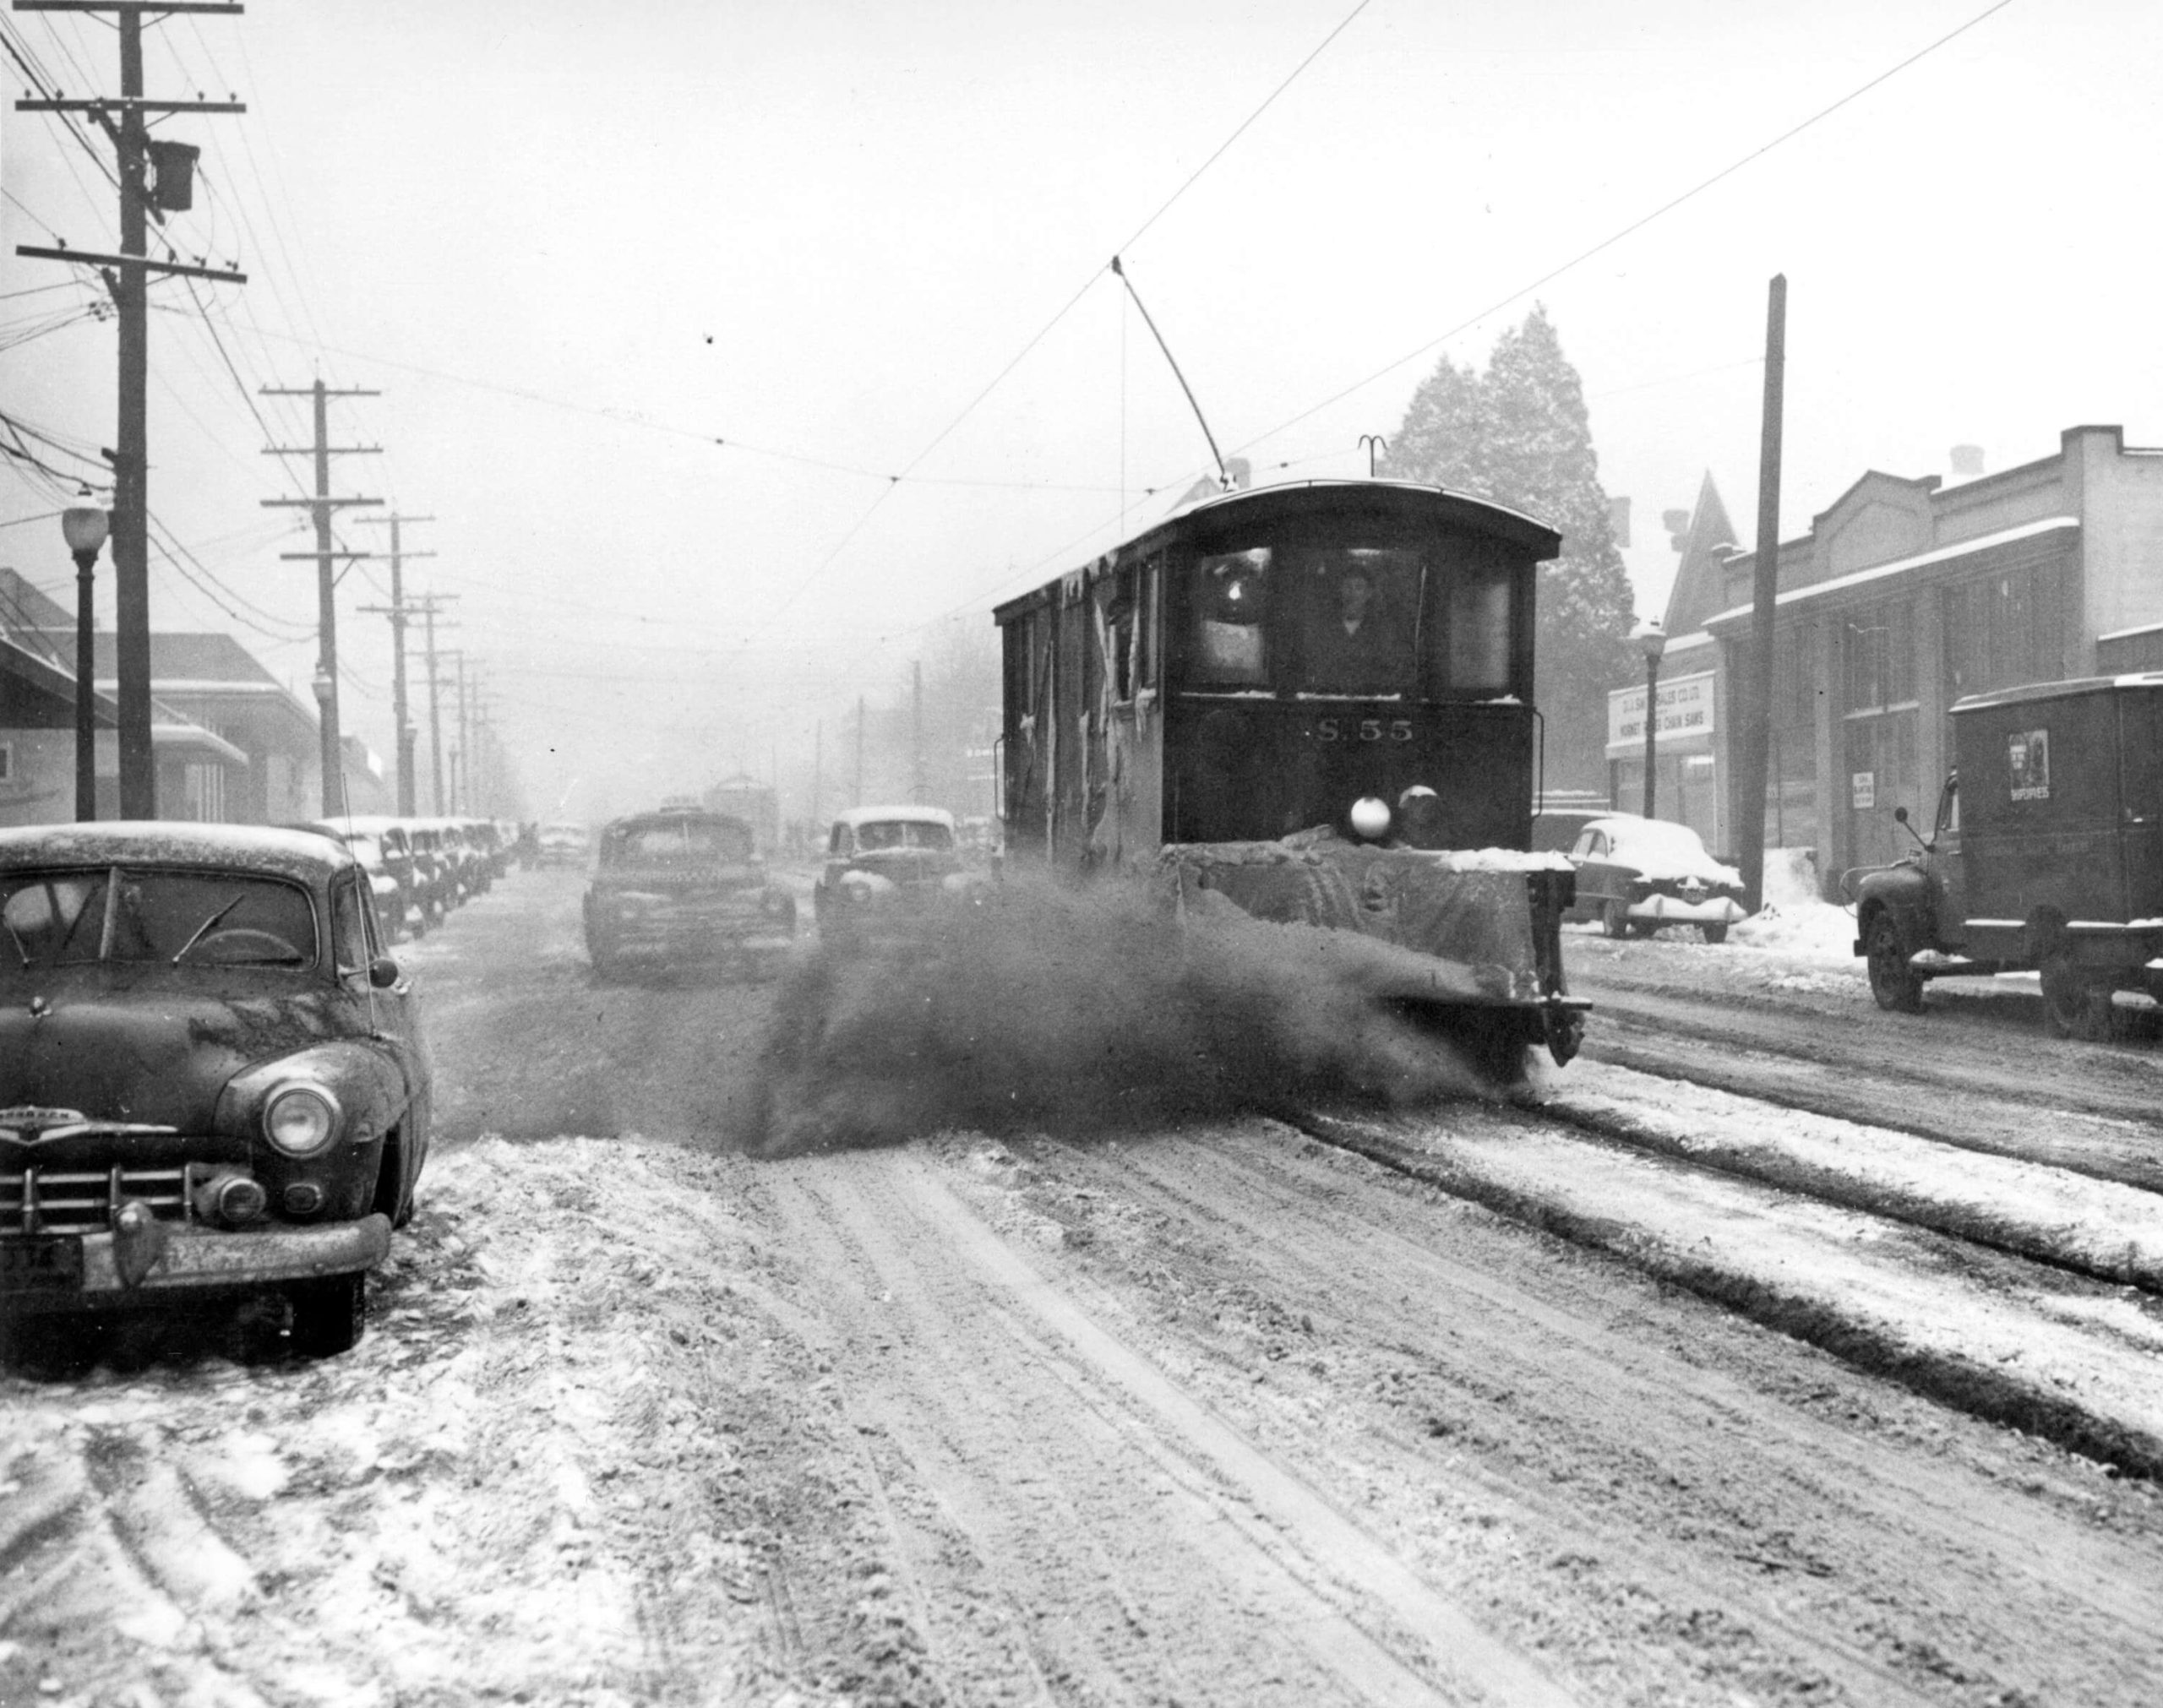 1948 - Sweeper car brushing away snow